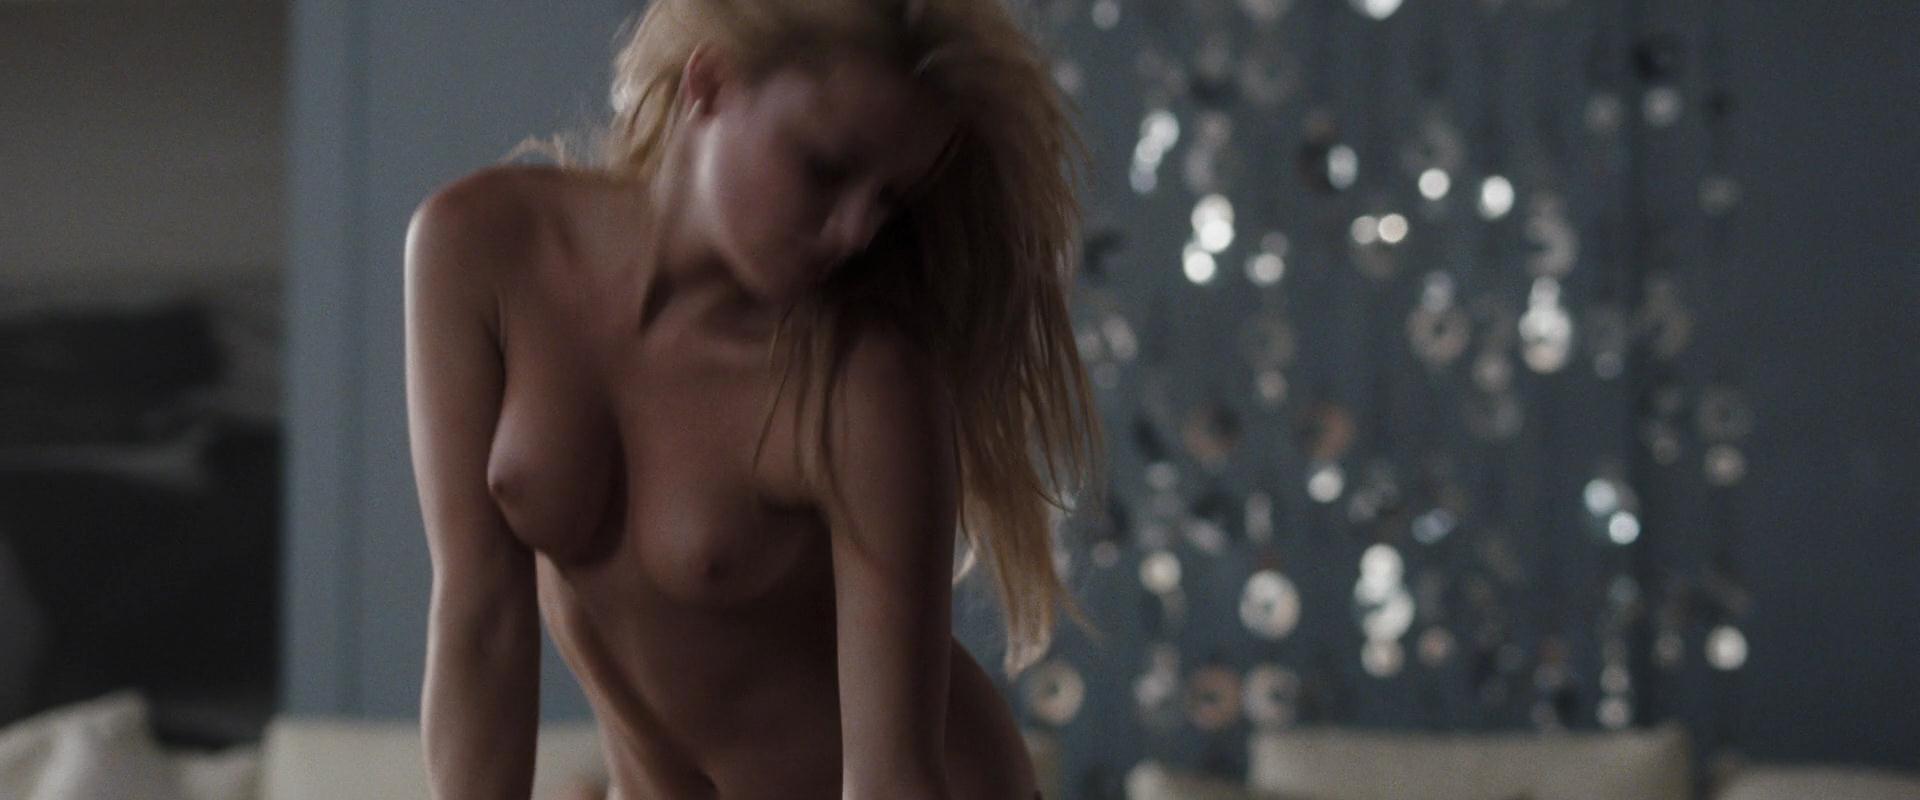 Эмбер Херд nude pics.